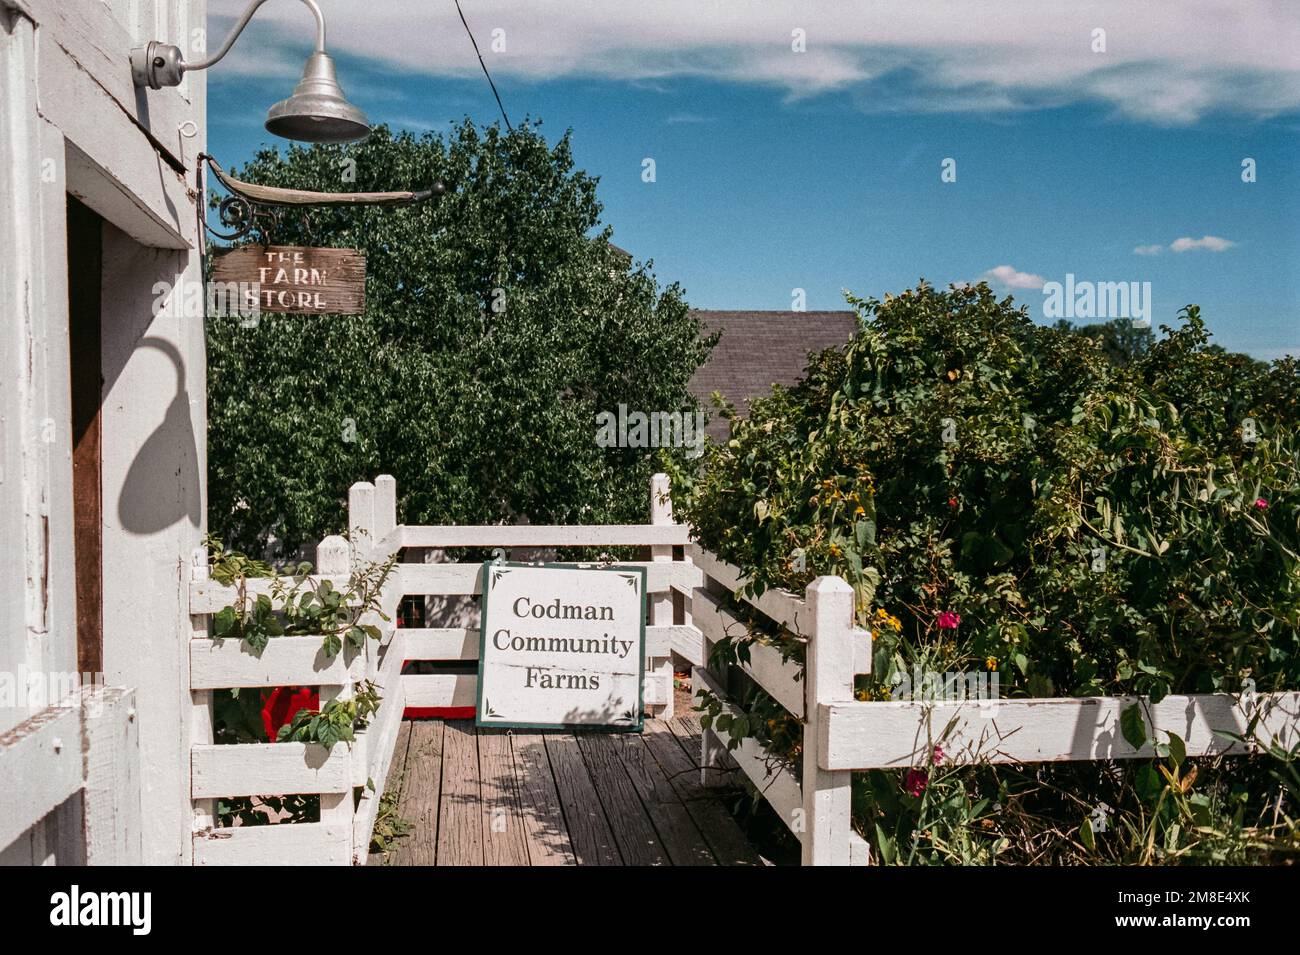 L'entrée du magasin de ferme entouré d'arbustes verts une clôture en bois blanc aux fermes communautaires Codman. Lincoln, Massachusetts. L'image était environ Banque D'Images